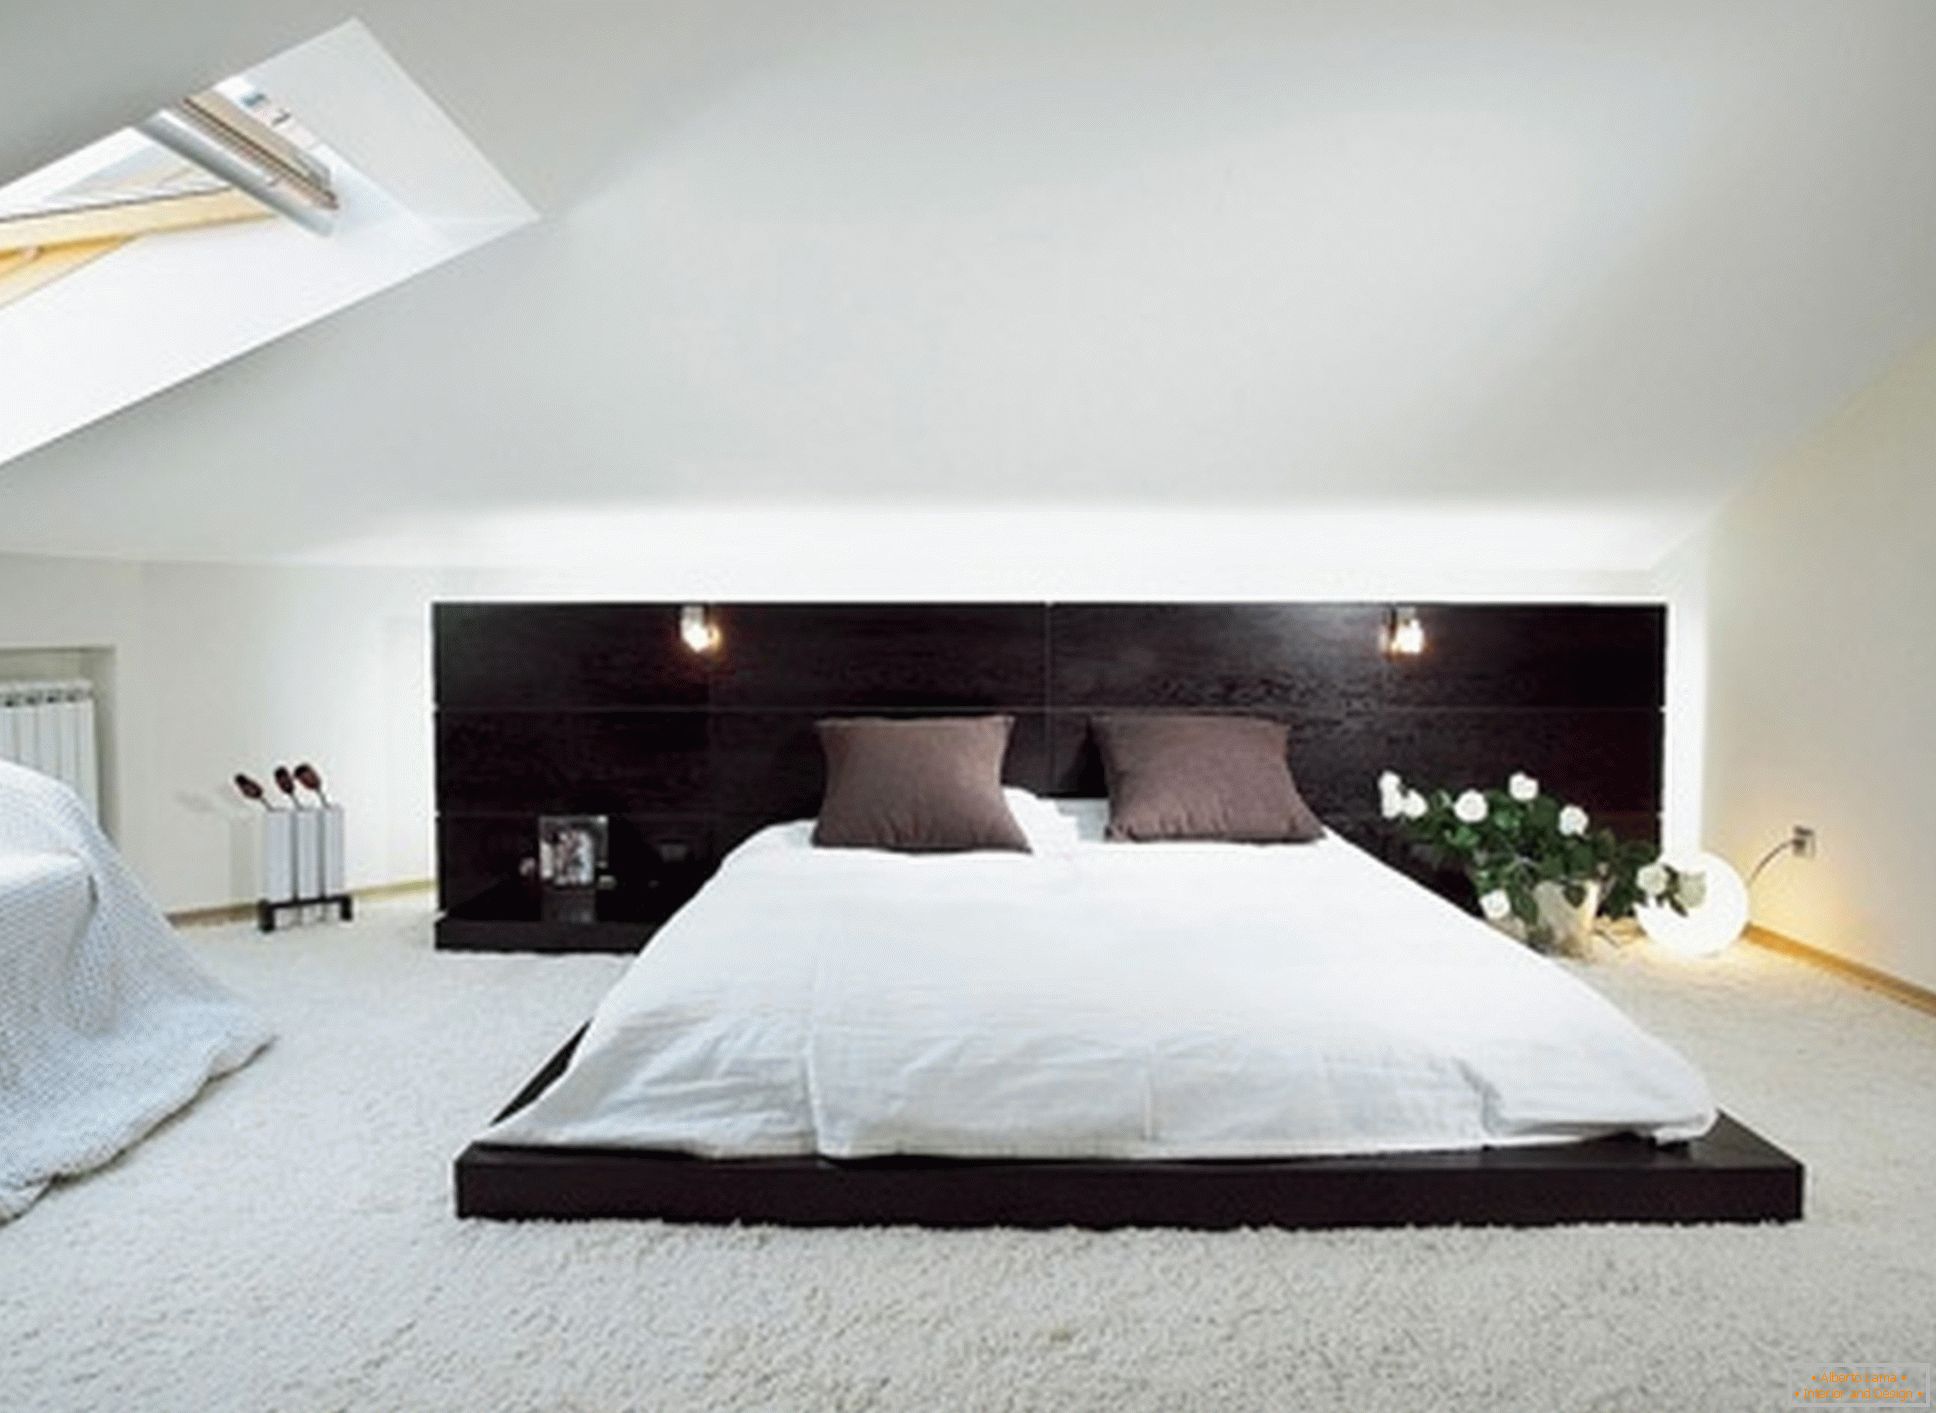 Луксузна спаваћа соба у стилу минимализма - пример успешног дизајна мале собе на поду поткровља.